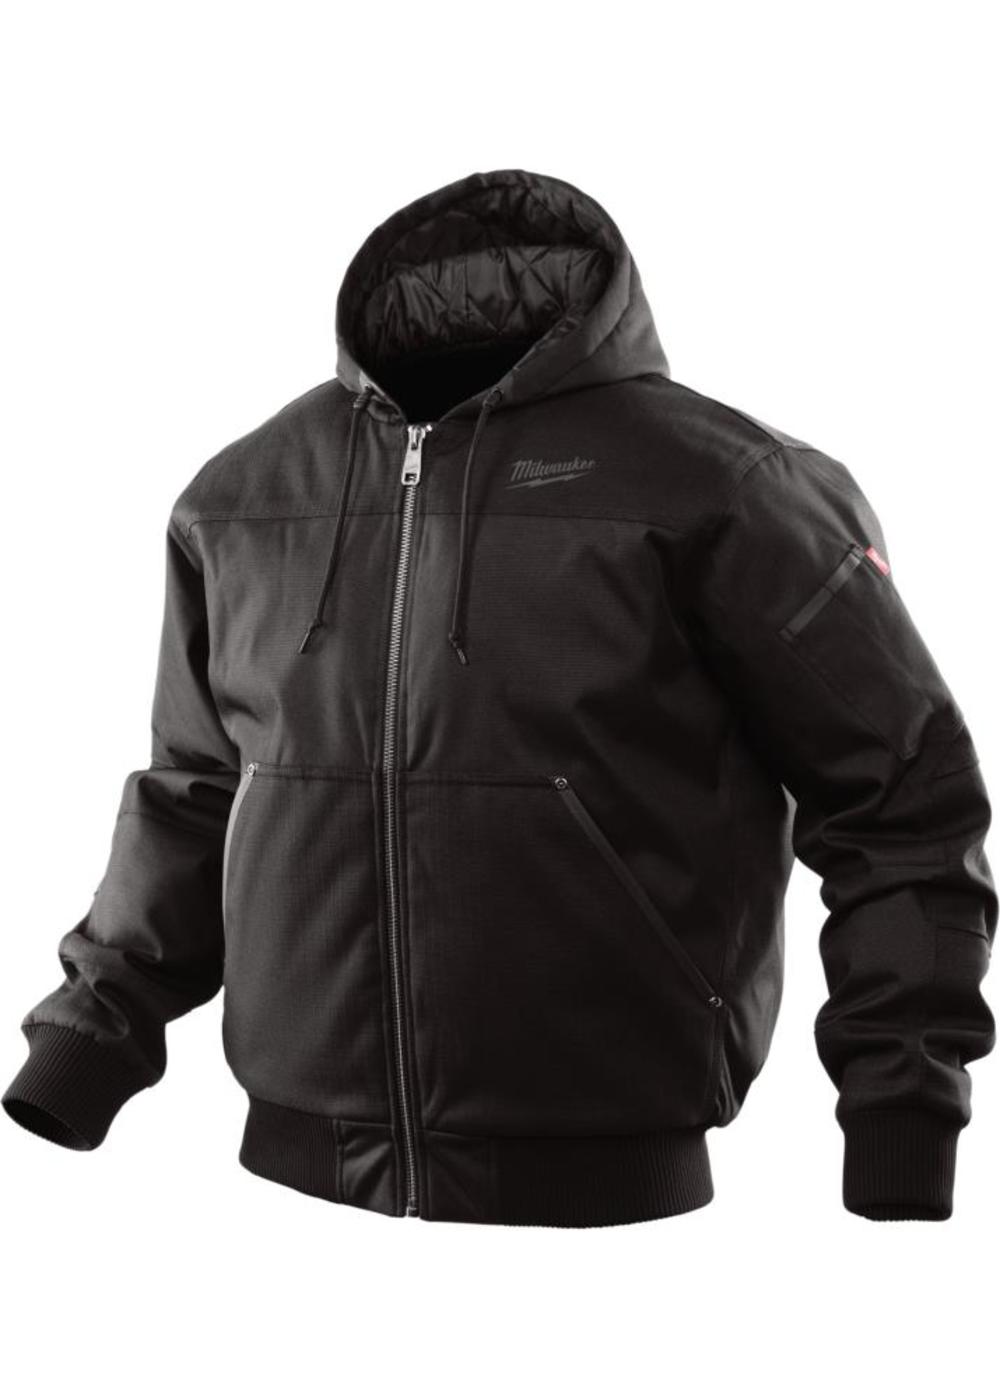 Milwaukee Black Hooded Jacket - XL Milwaukee Acme Tools